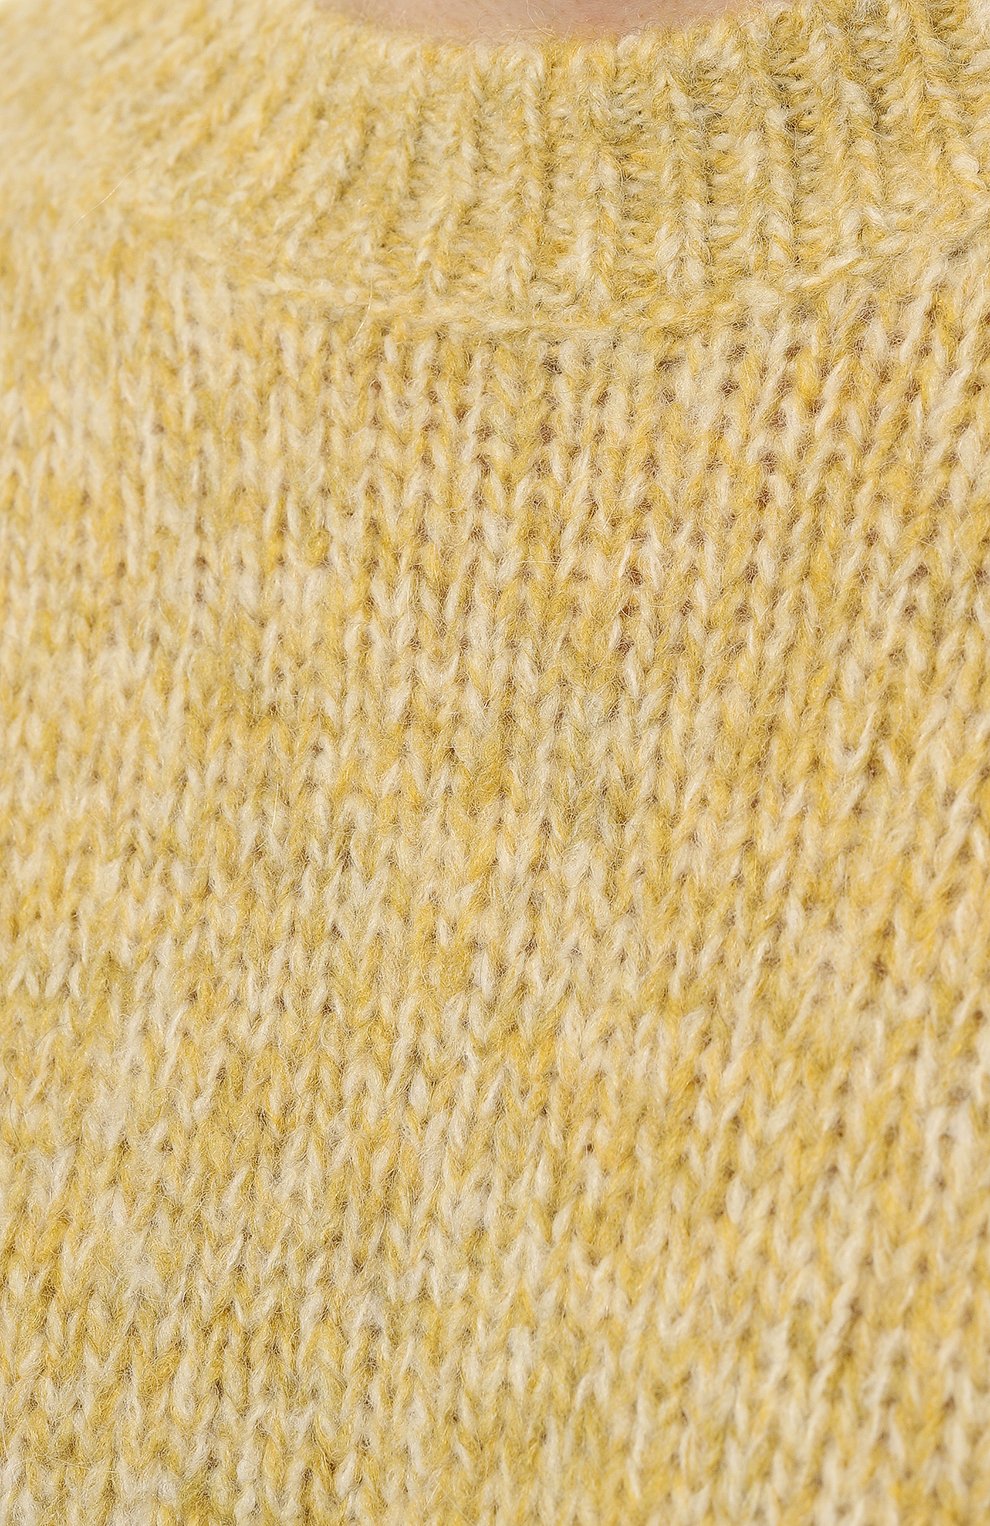 Ажурный пуловер реглан золотисто-желтого цвета